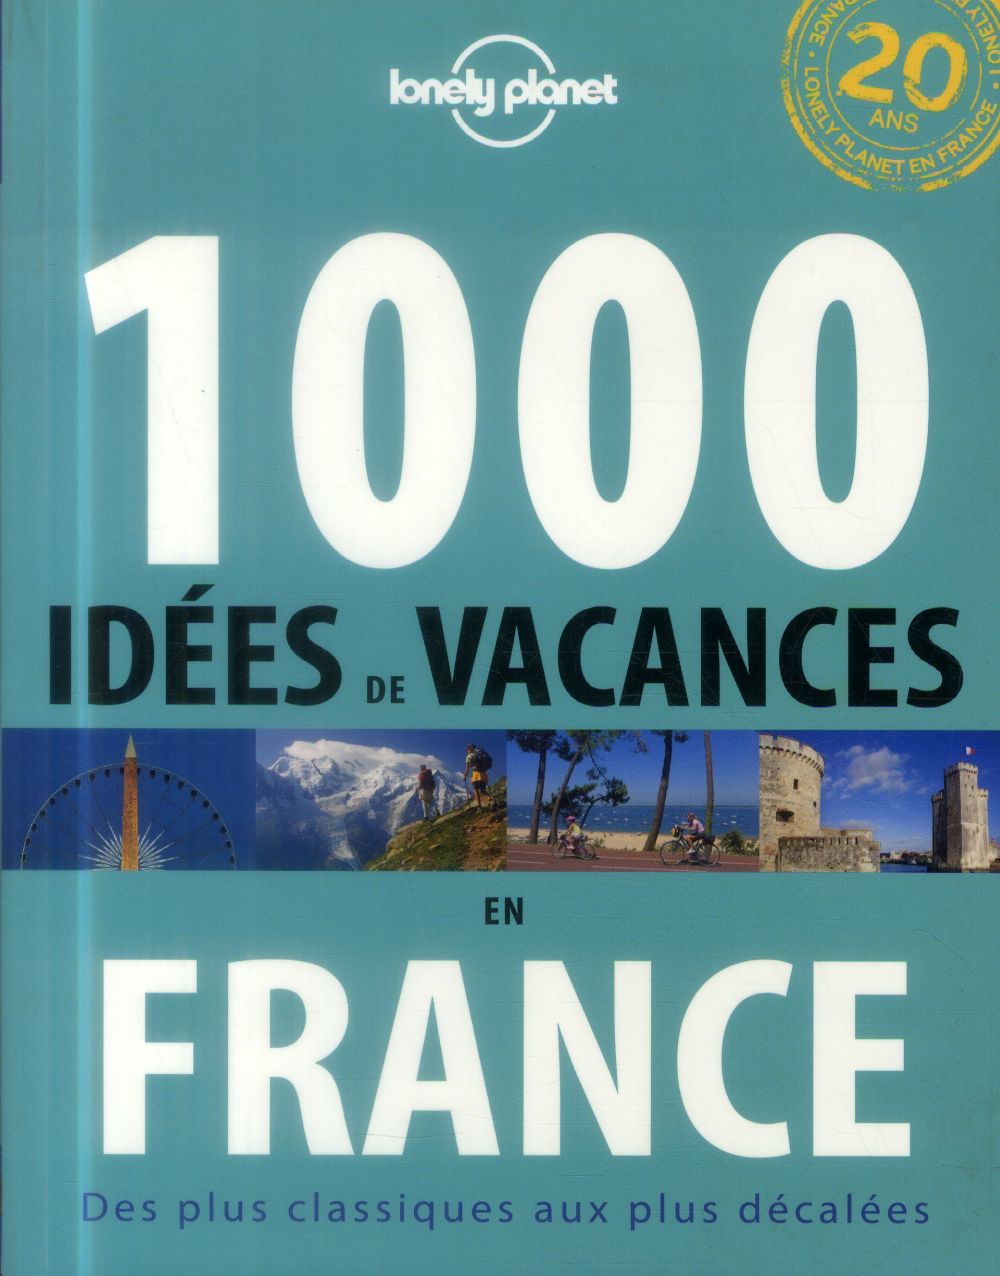 1000 IDEES DE VACANCES EN FRANCE